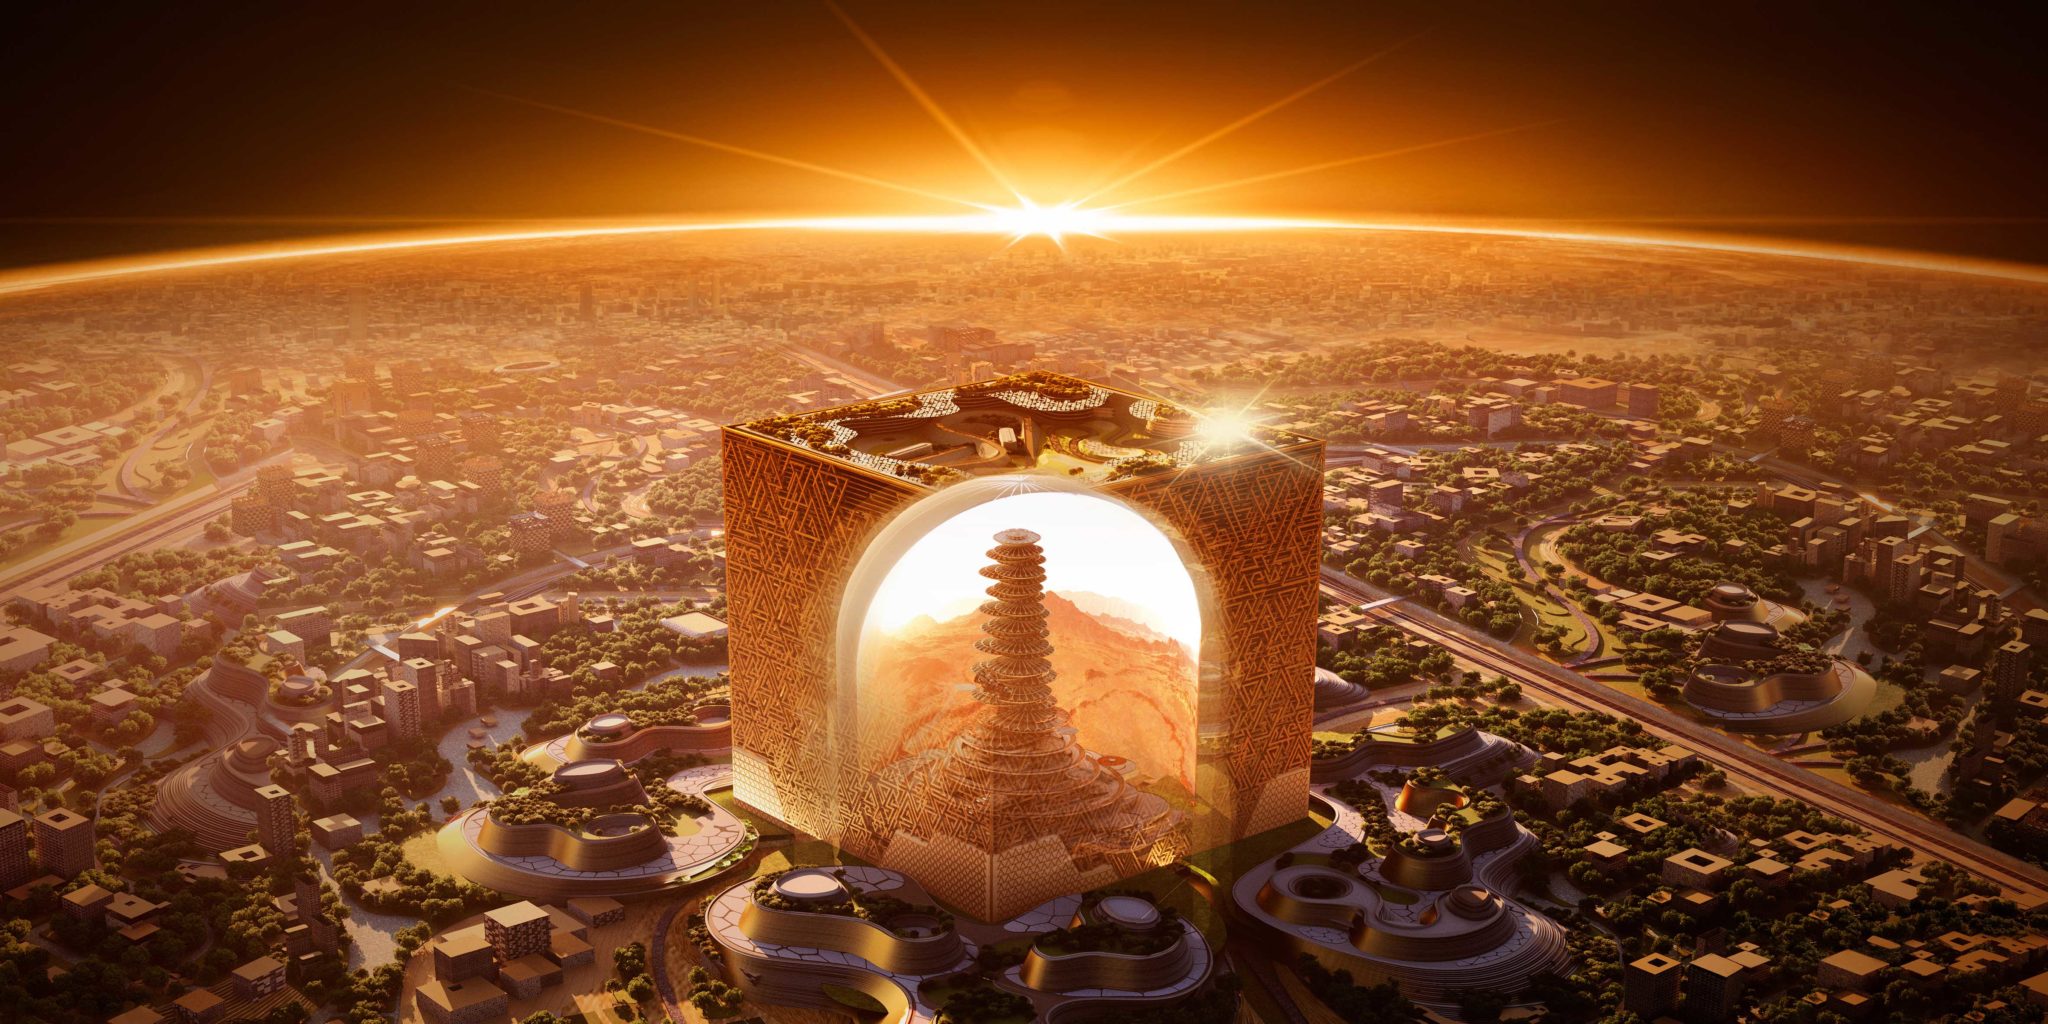 Σαουδική Αραβία: Ένας «Κύβος» με 400 μέτρα ύψος, πλάτος και μήκος, το νέο σχέδιο του Μοχάμεντ μπιν Σαλμάν